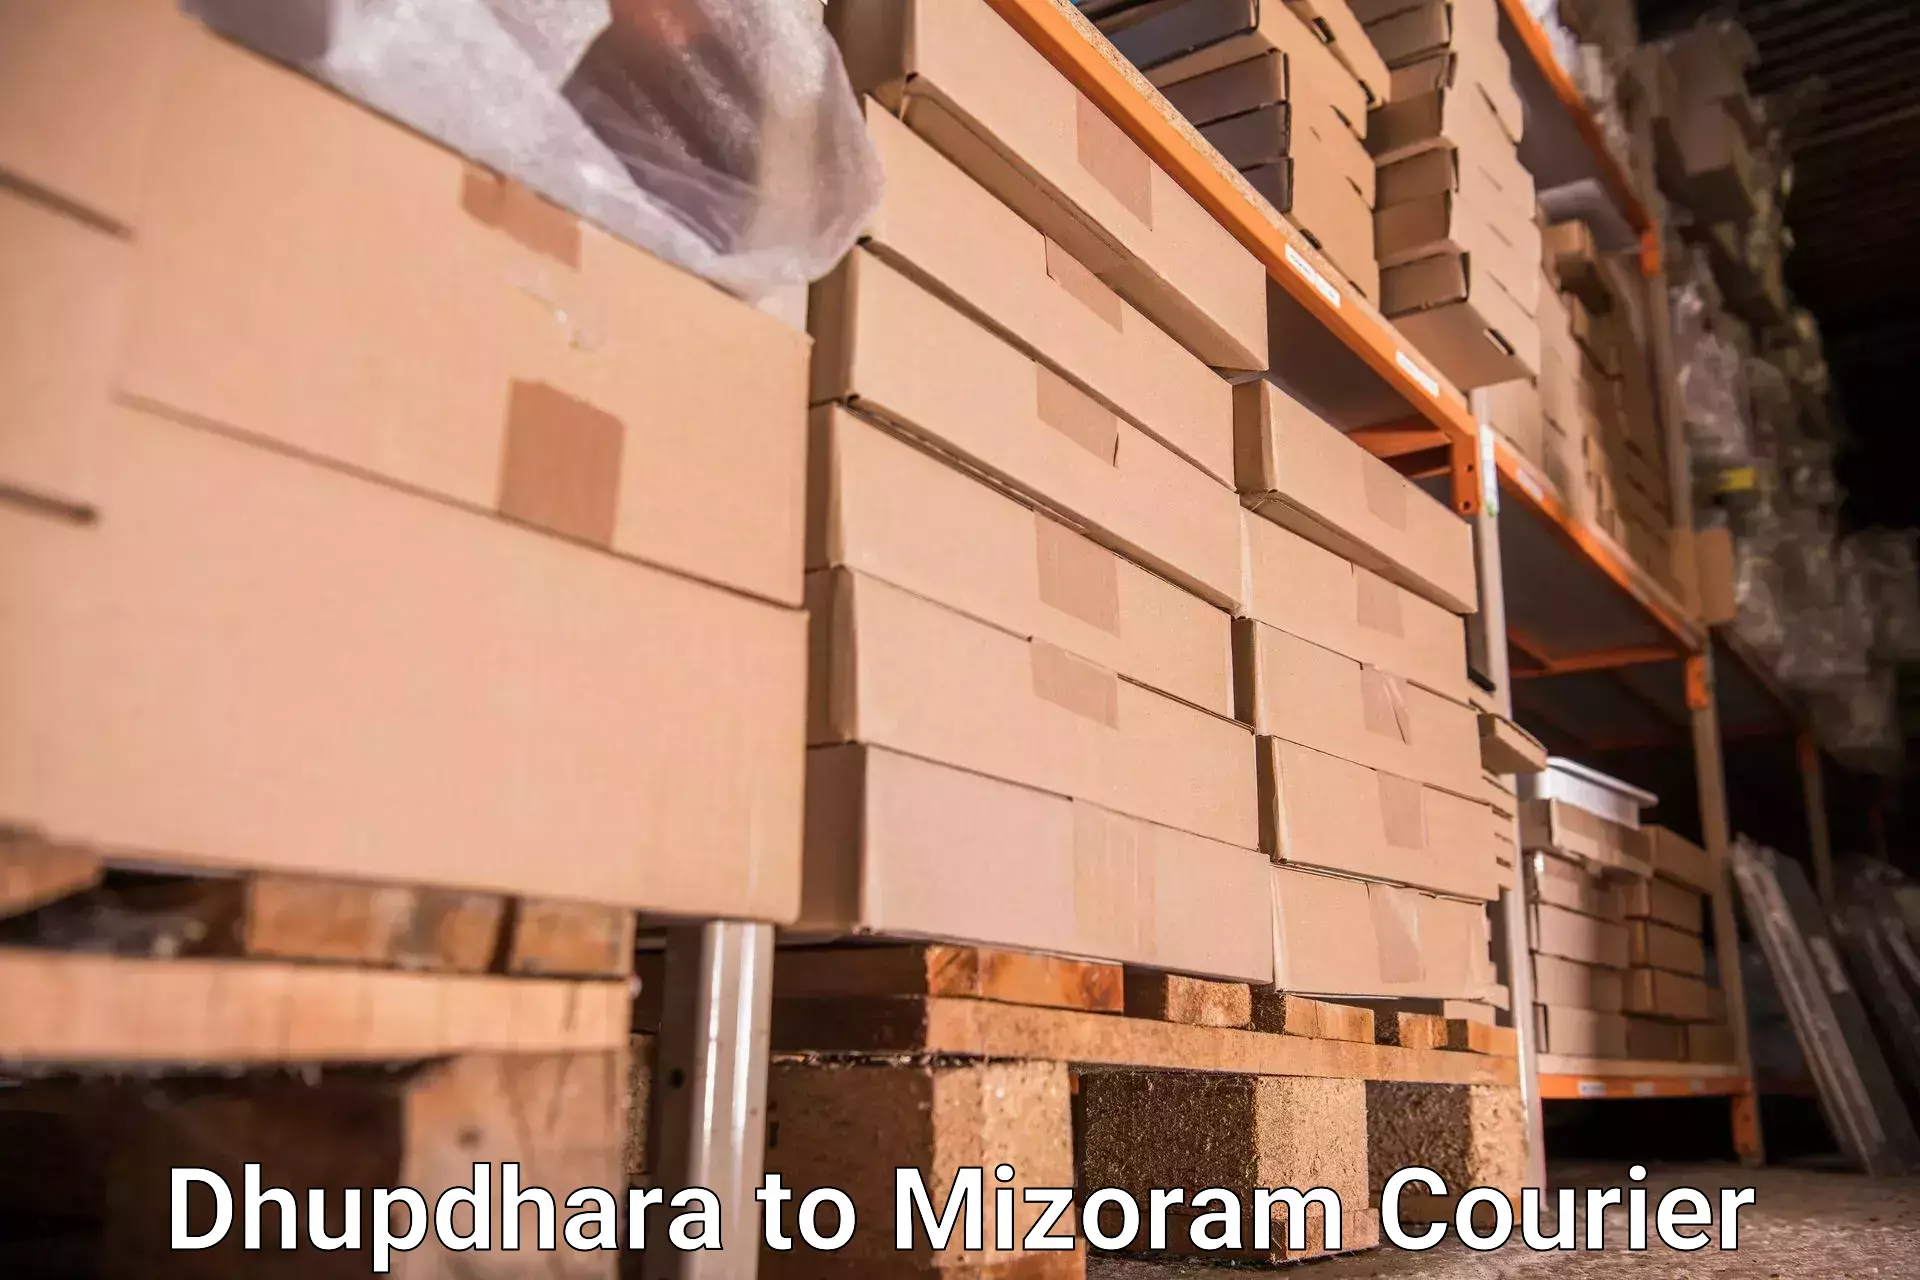 Baggage transport innovation Dhupdhara to Mizoram